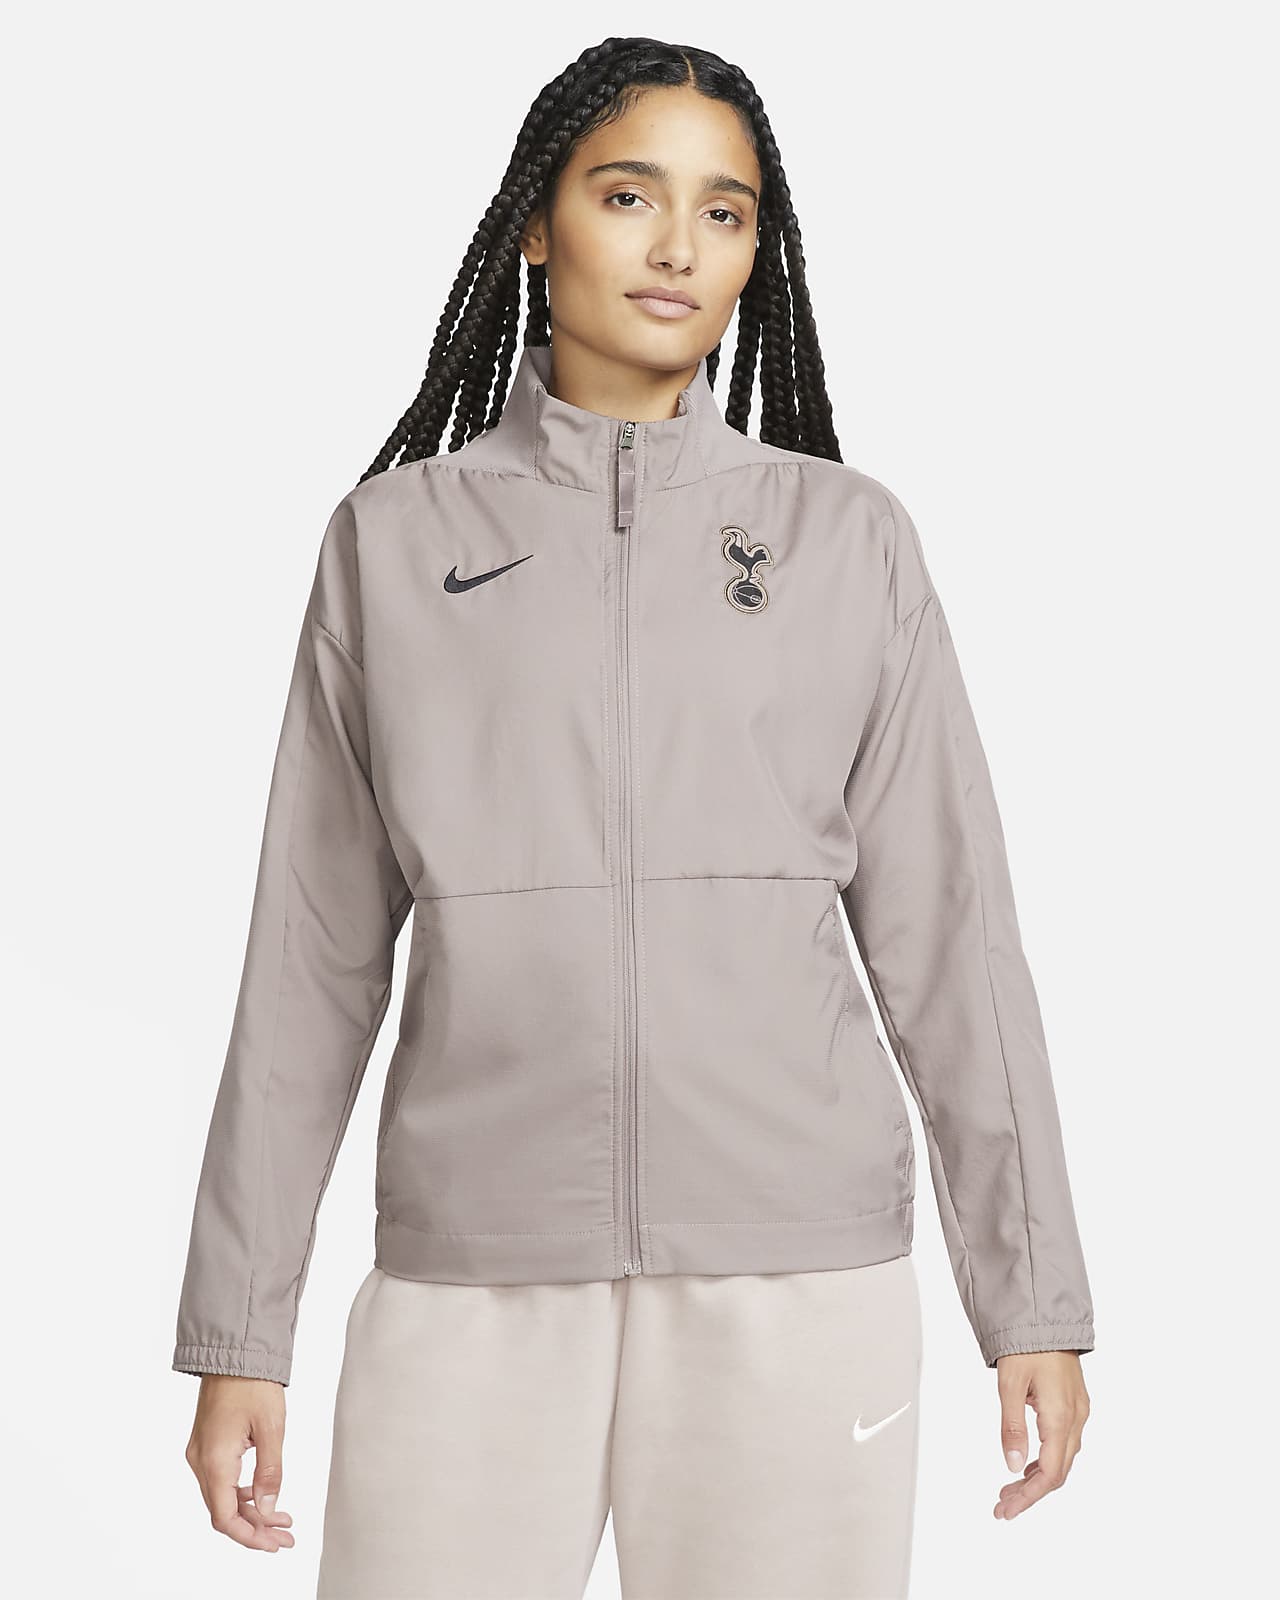 Veste de foot tissée Nike Dri-FIT Tottenham Hotspur 3e tenue pour femme